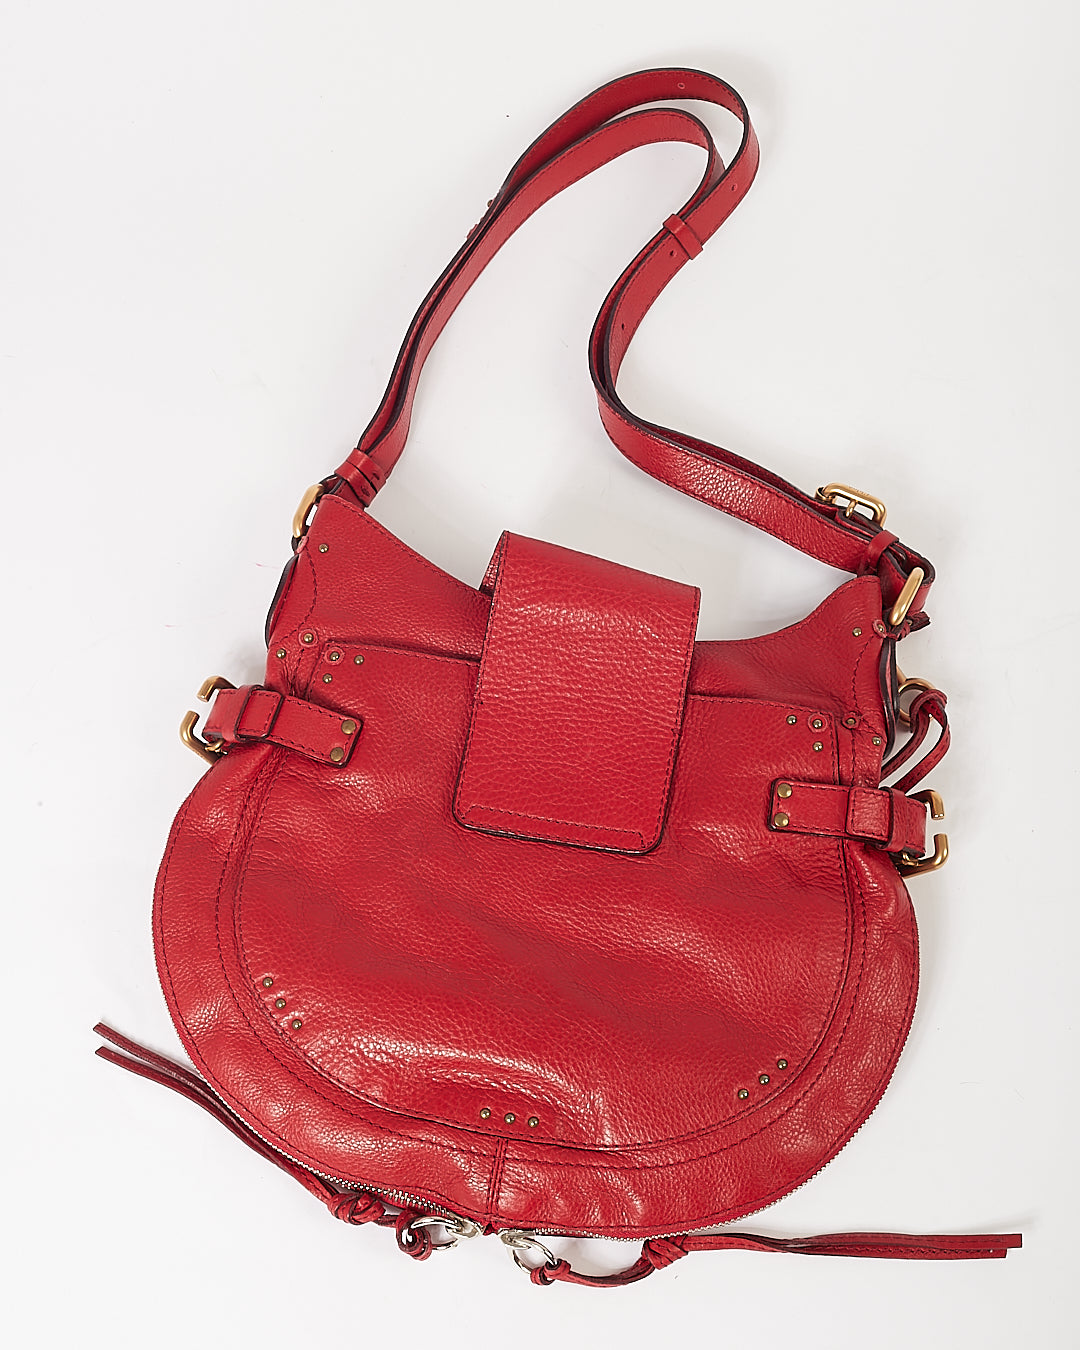 Chloe Red Leather Paddington Hobo Shoulder Bag